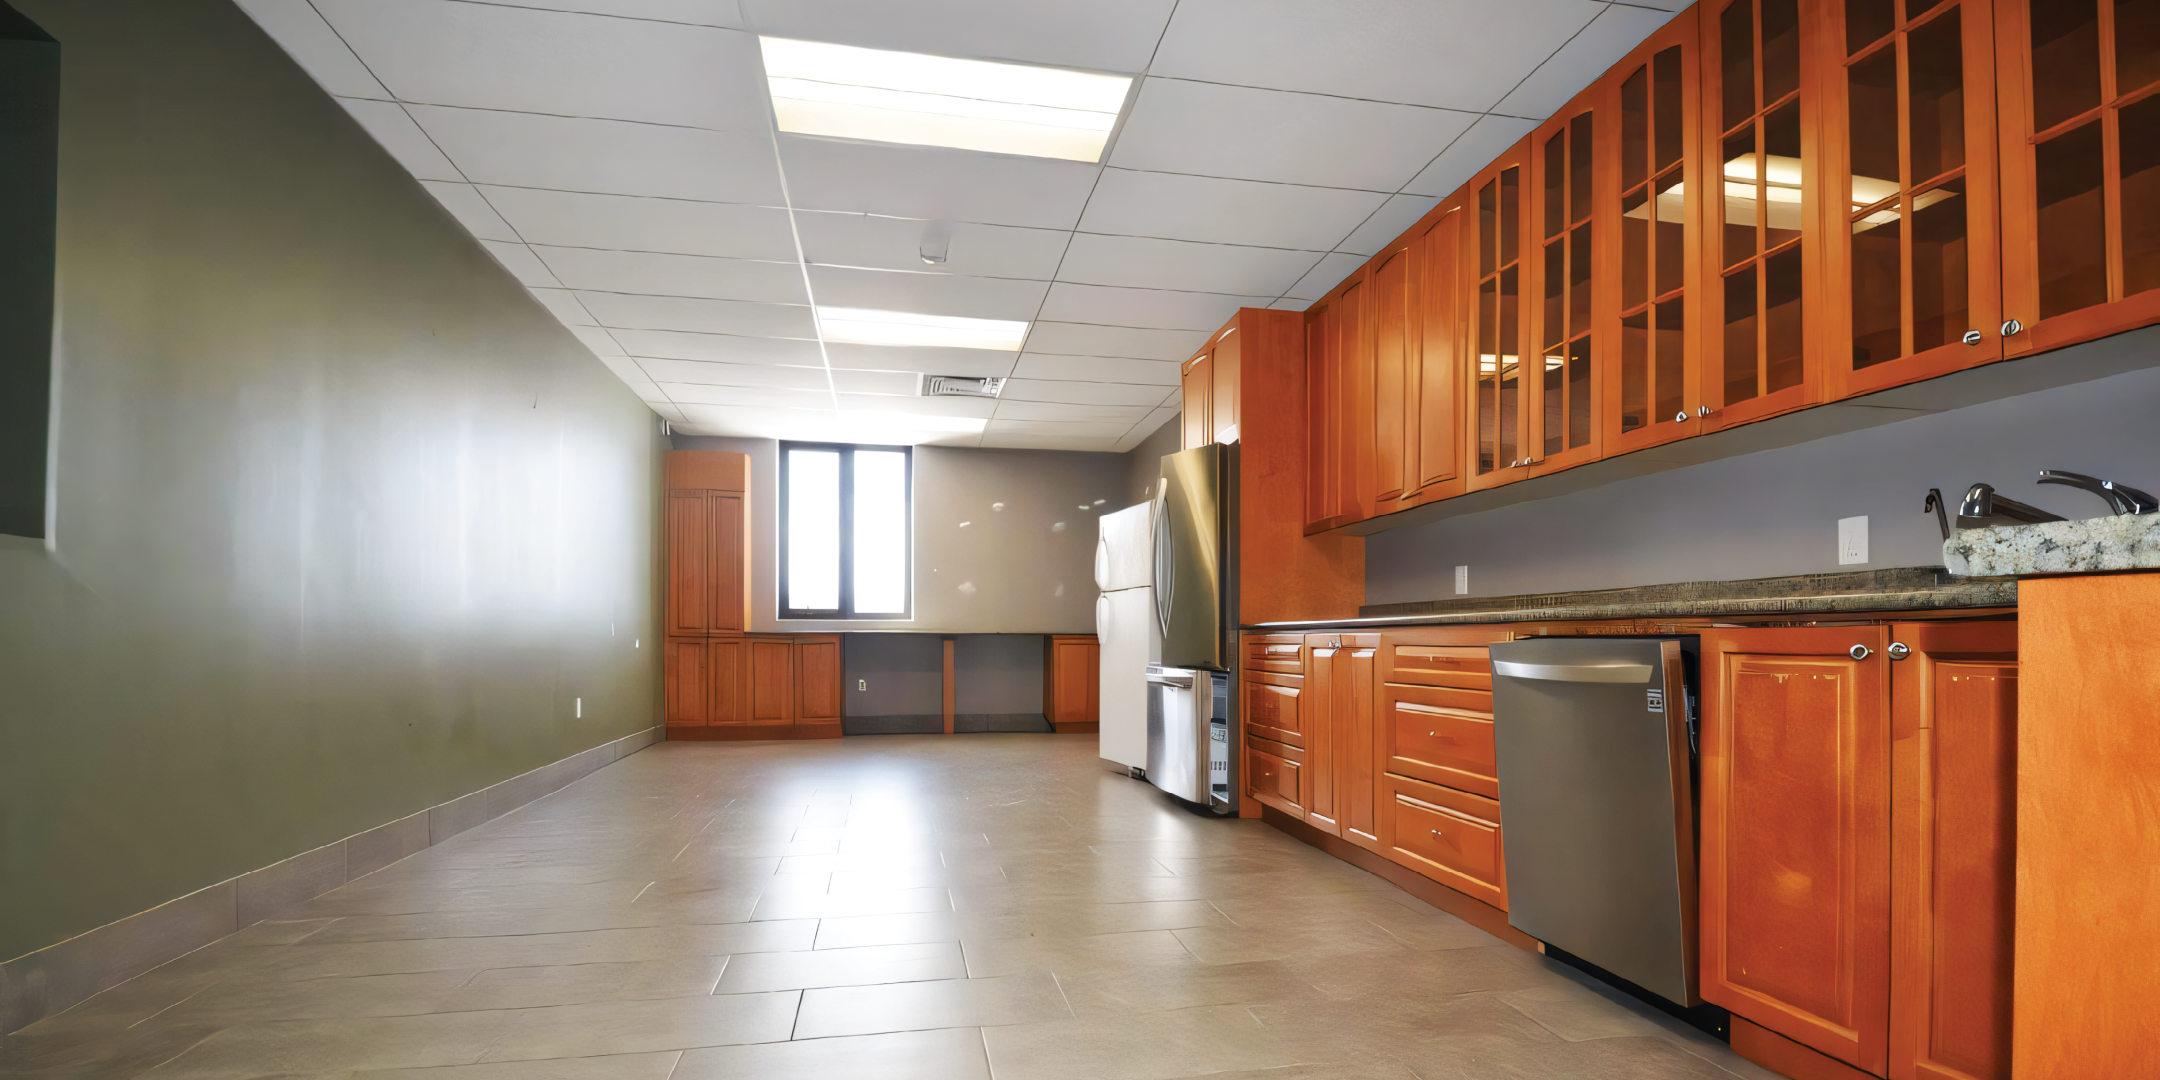 2267 15-16 Sideroad E building interior kitchen